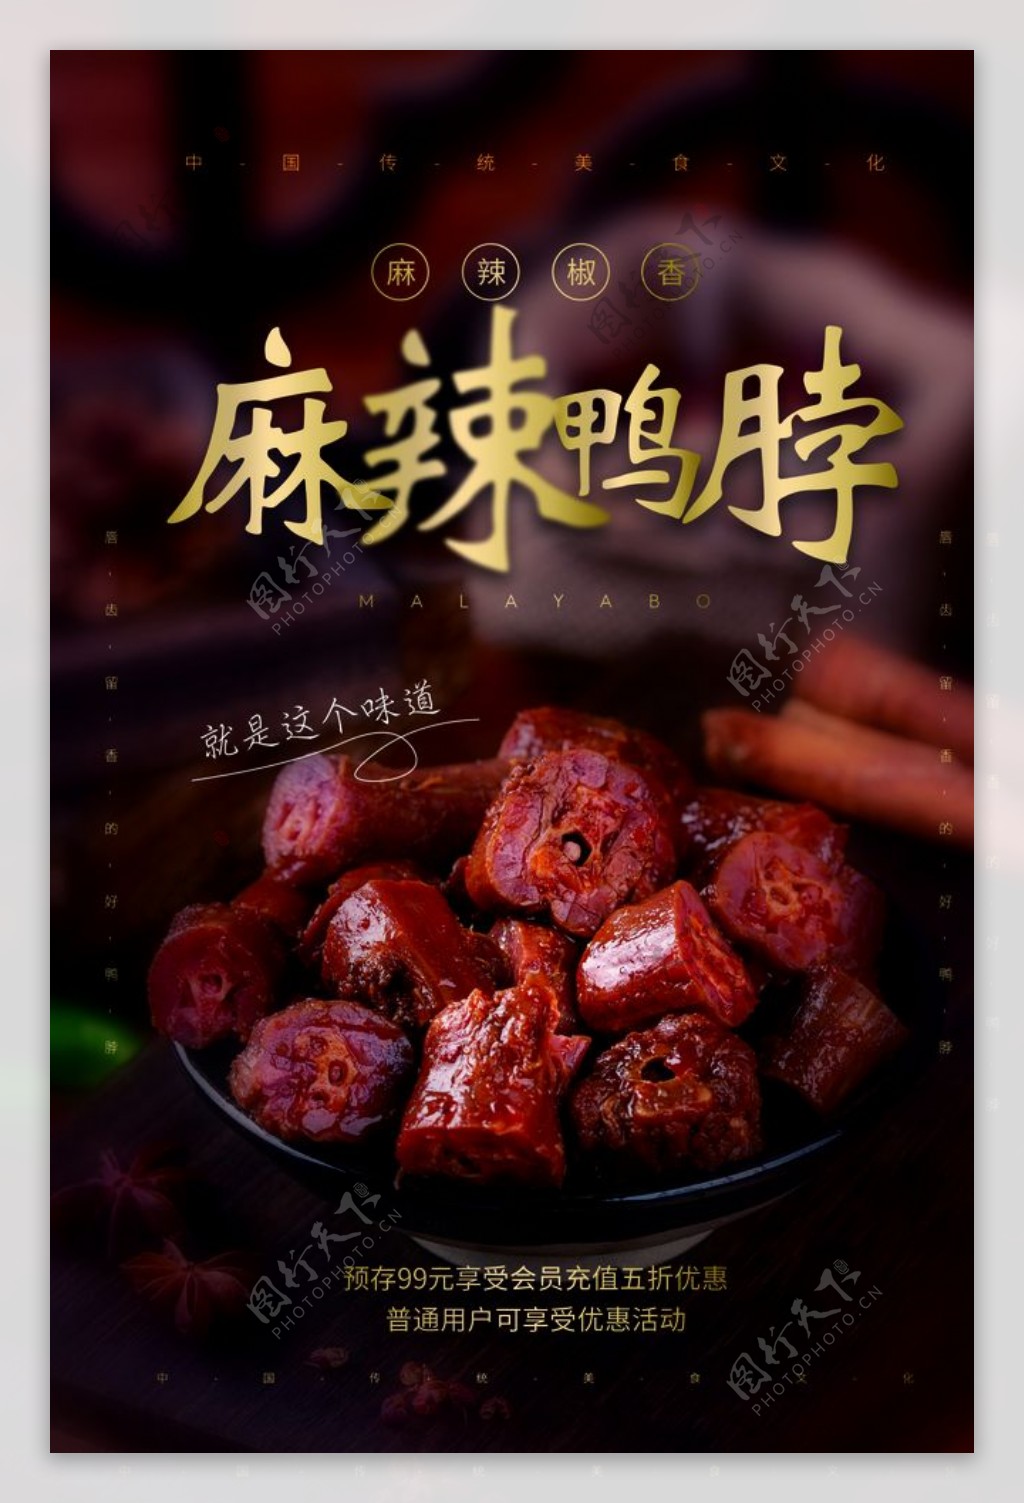 麻辣鸭脖美食活动宣传海报素材图片